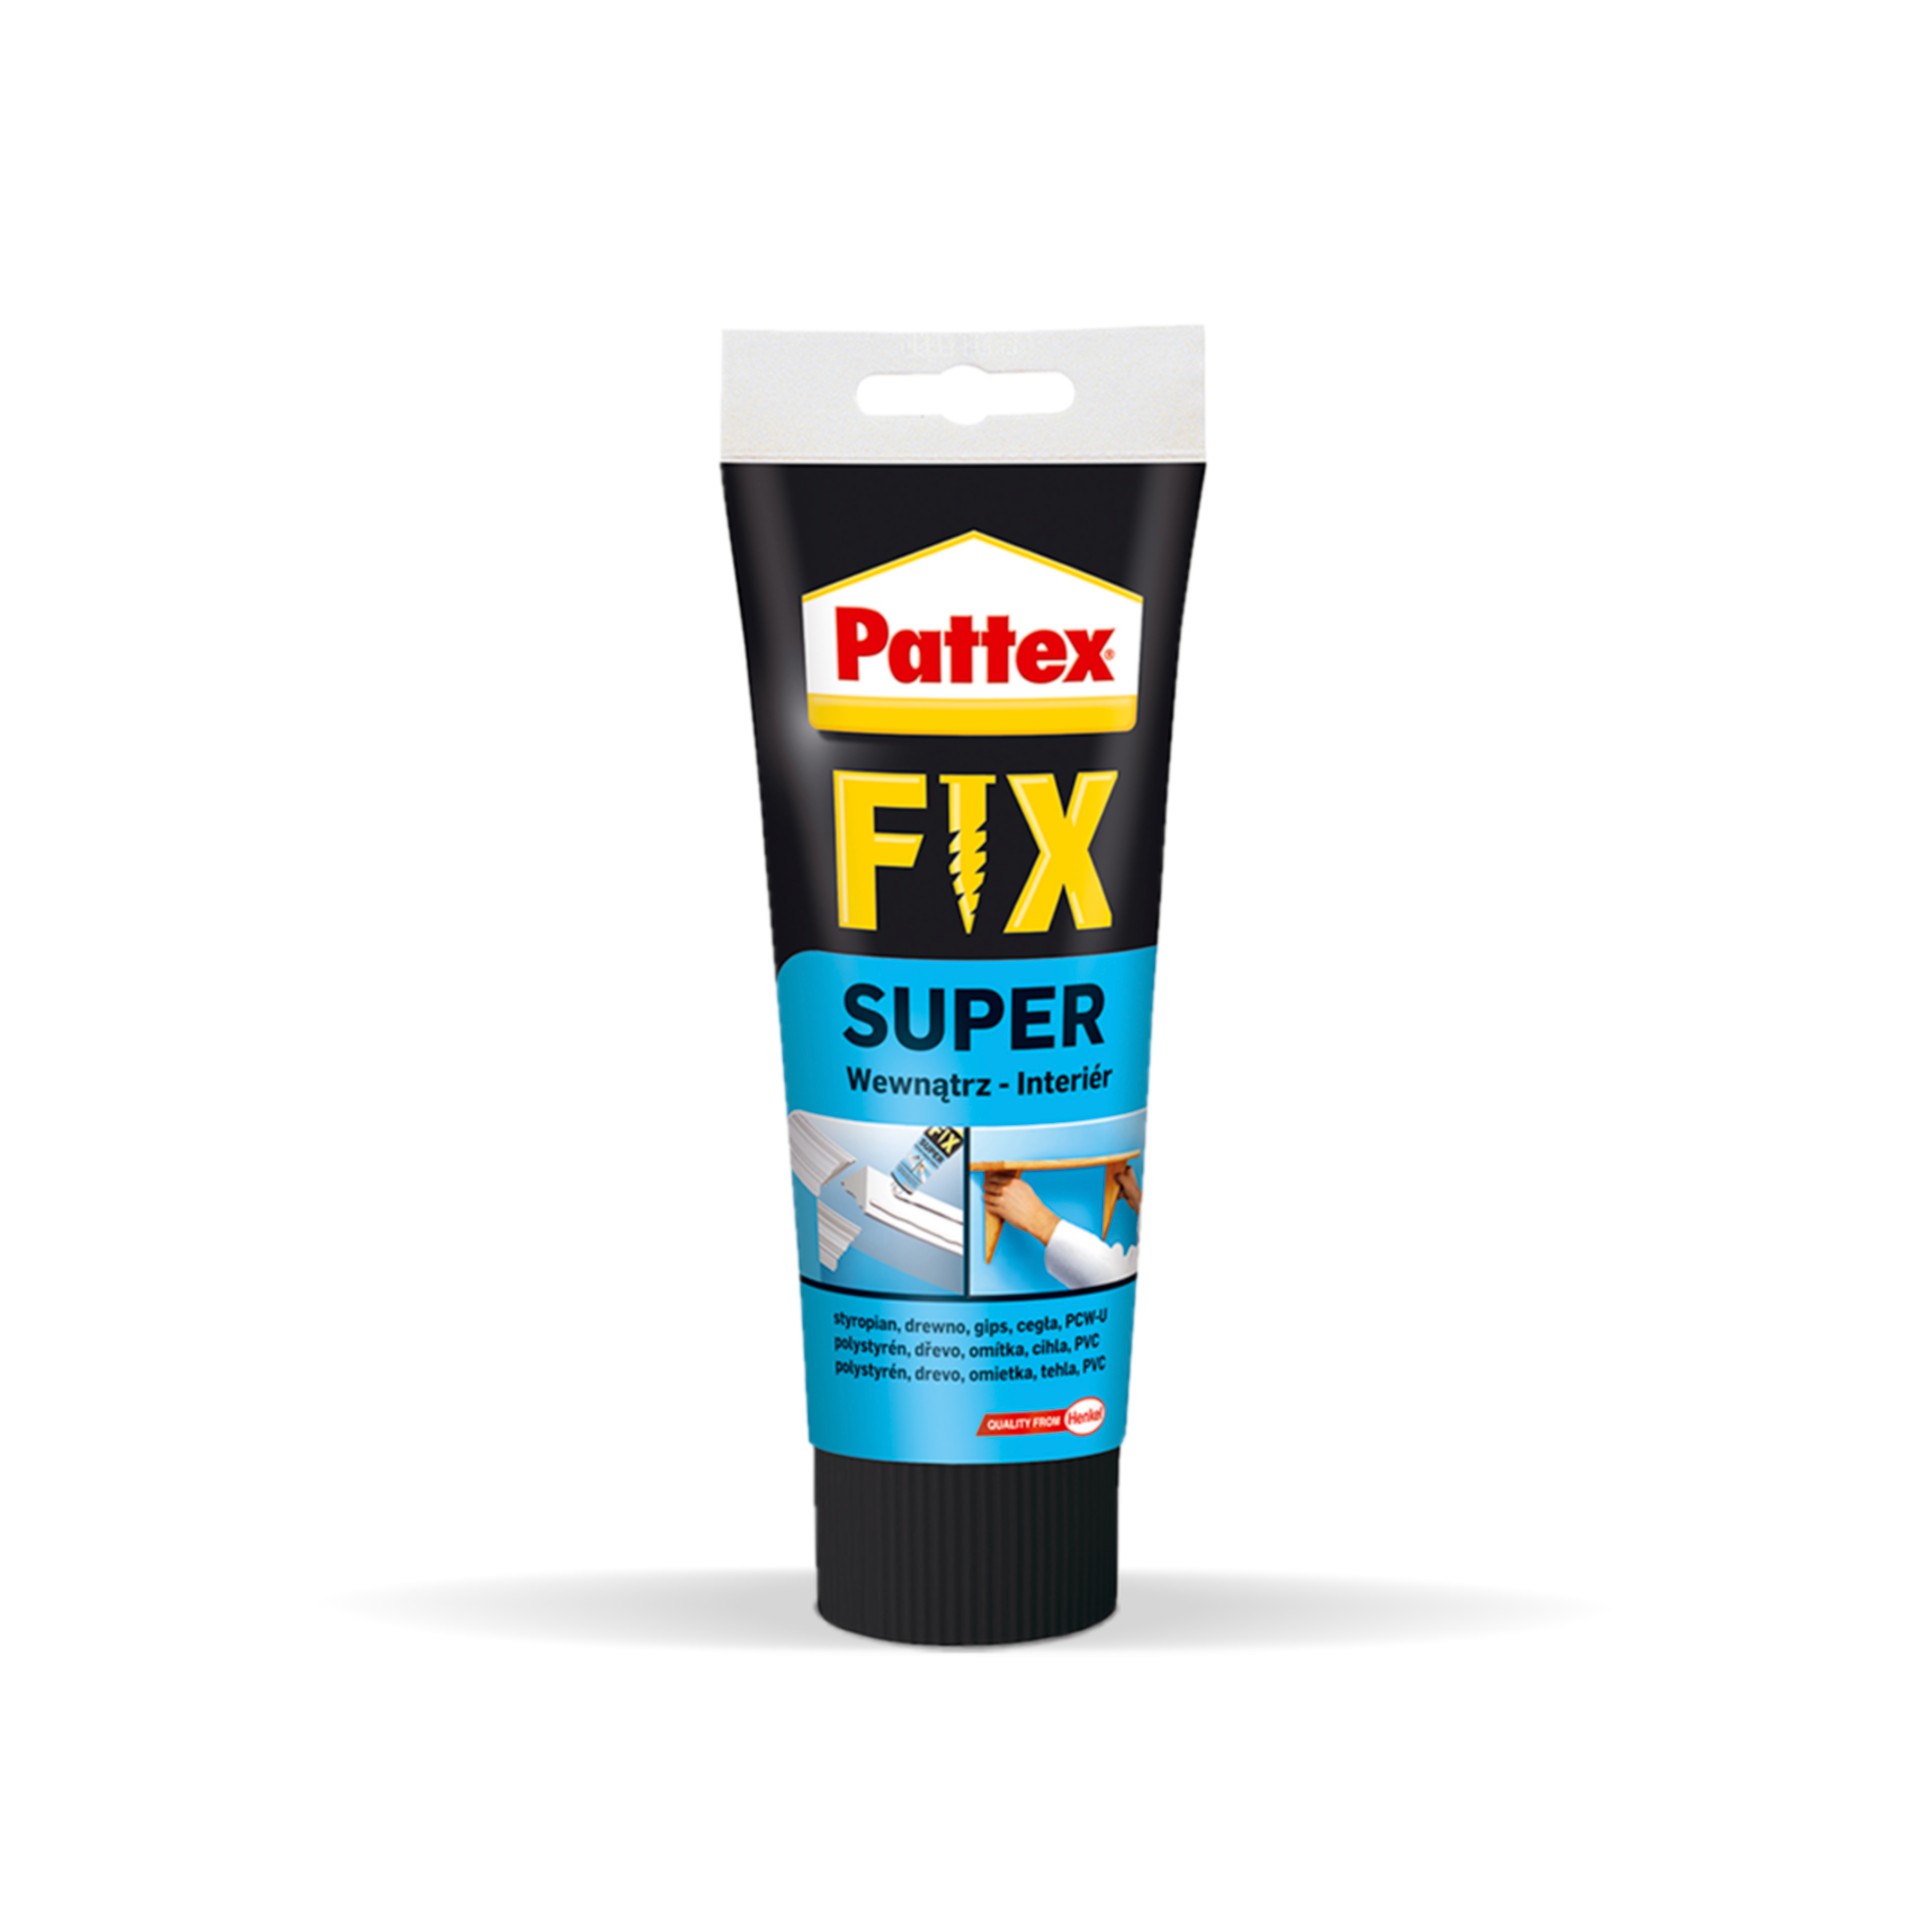 Pattex Fix Super PL50 250g